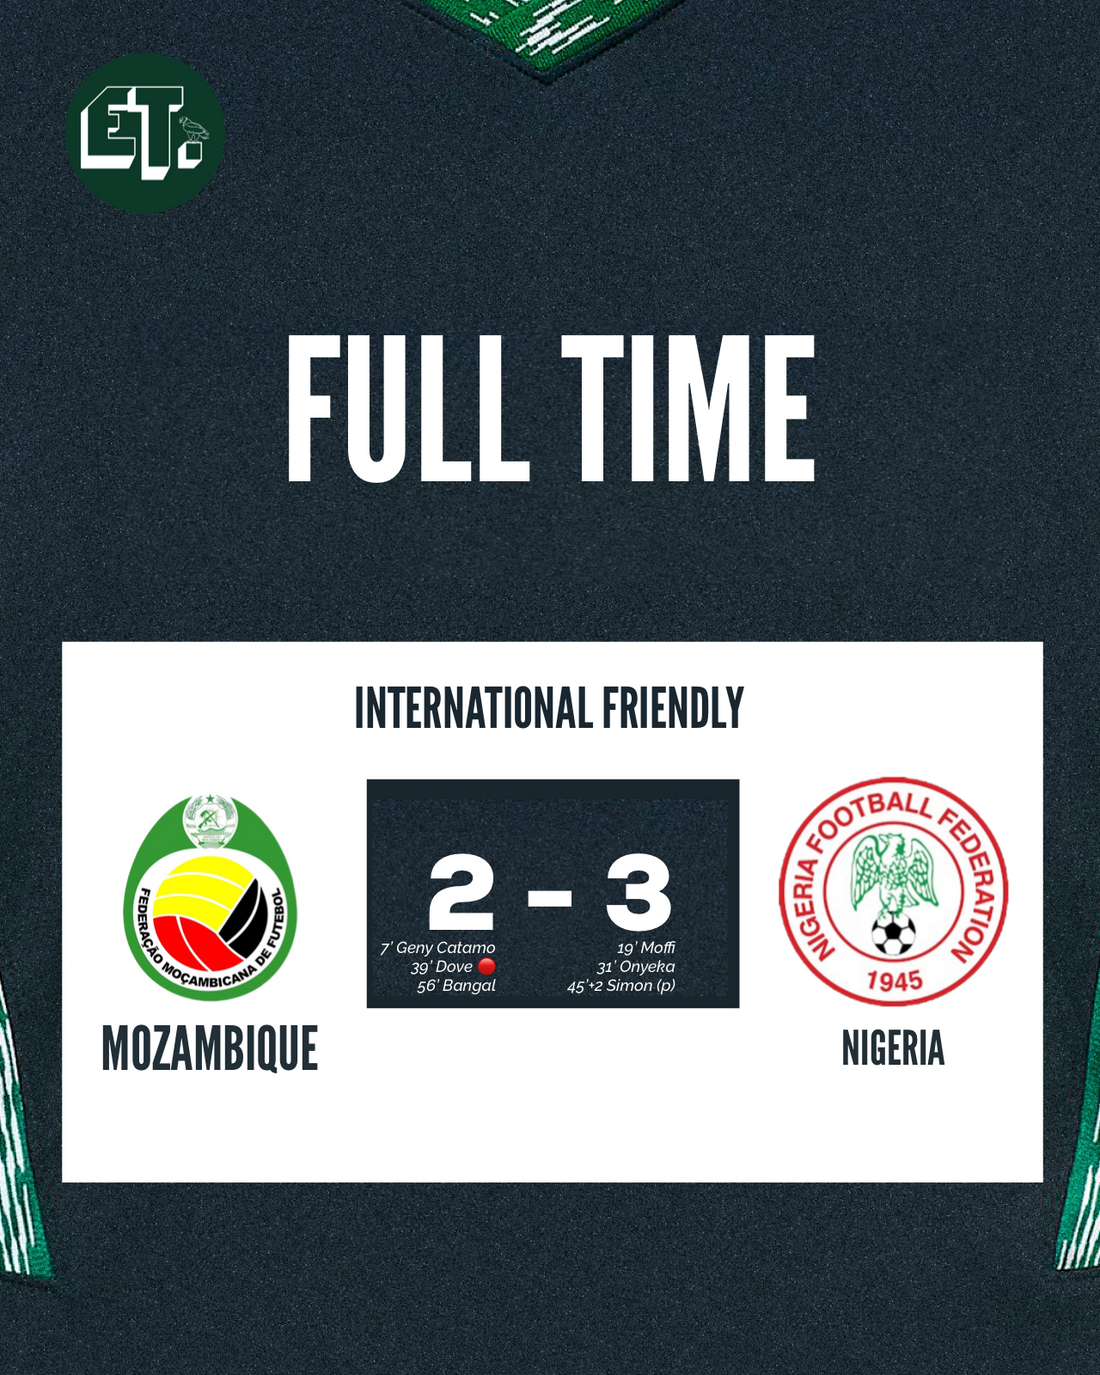 Nigeria 3-2 Mozambique: Super Eagles record fourth victory over the Mambas